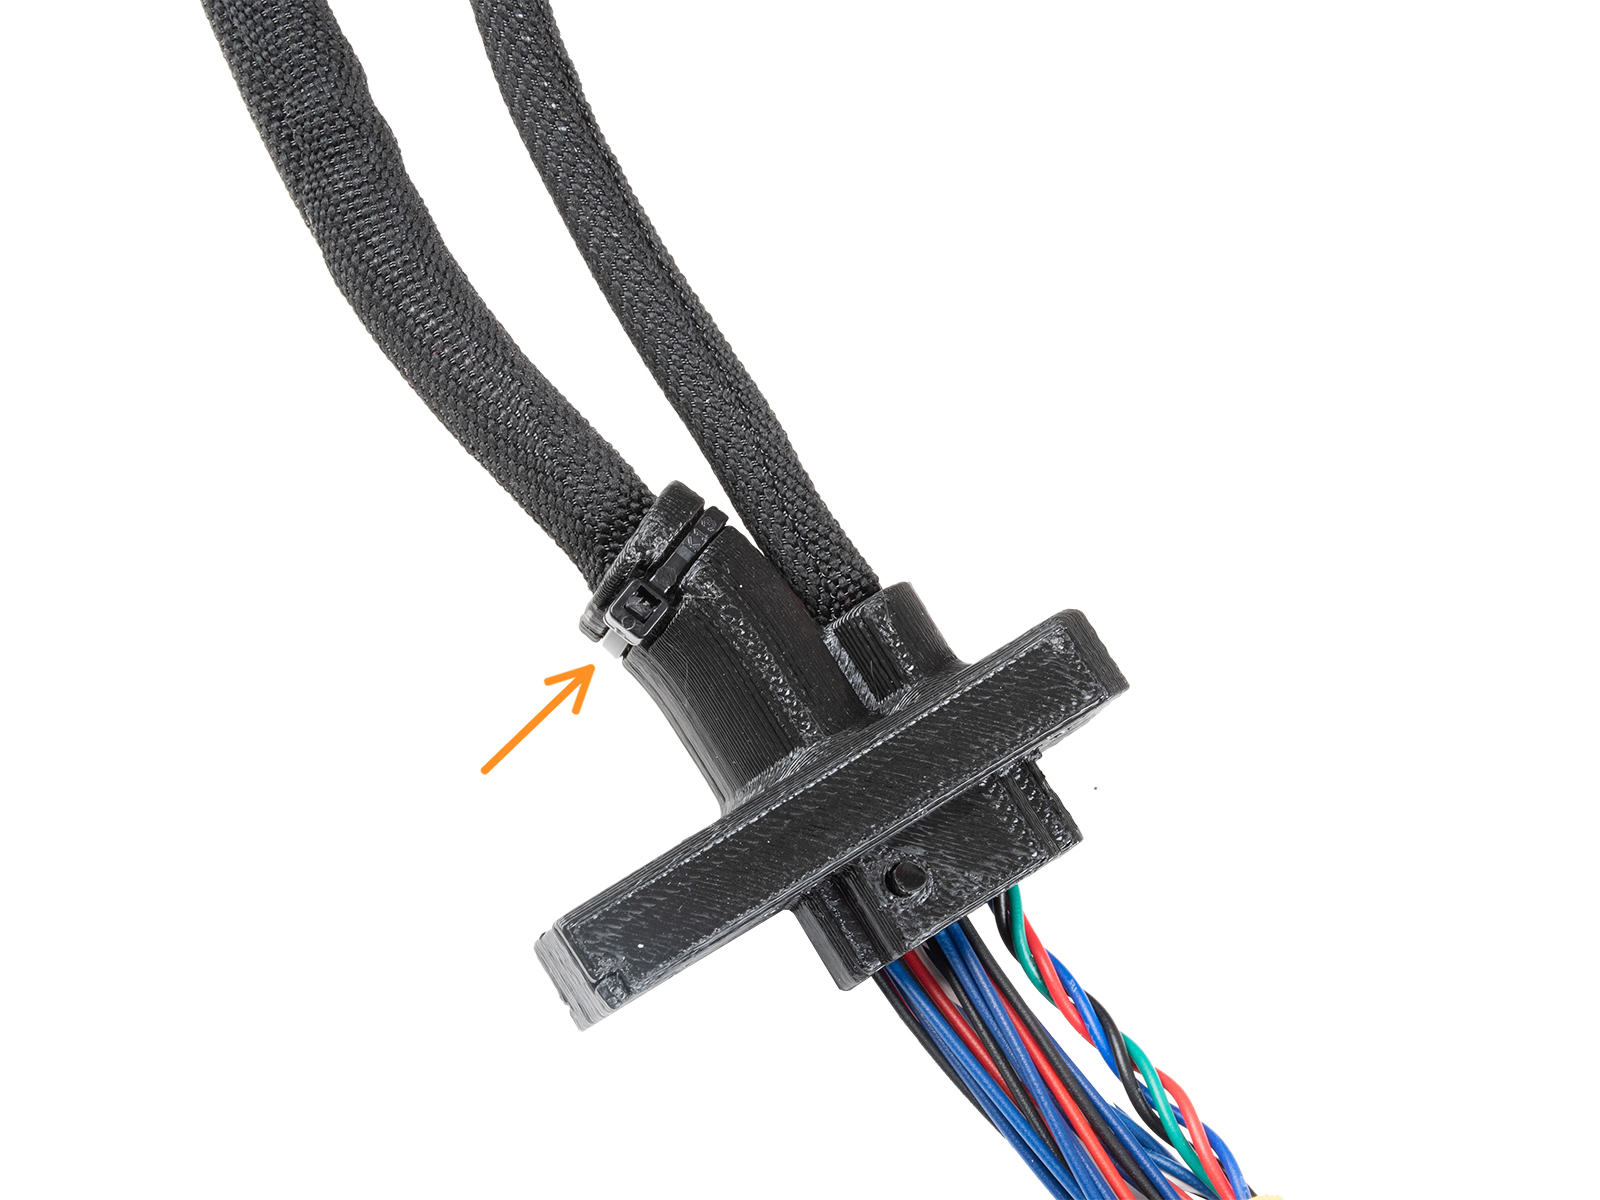 Coprire il supporto Ext-cable-holder